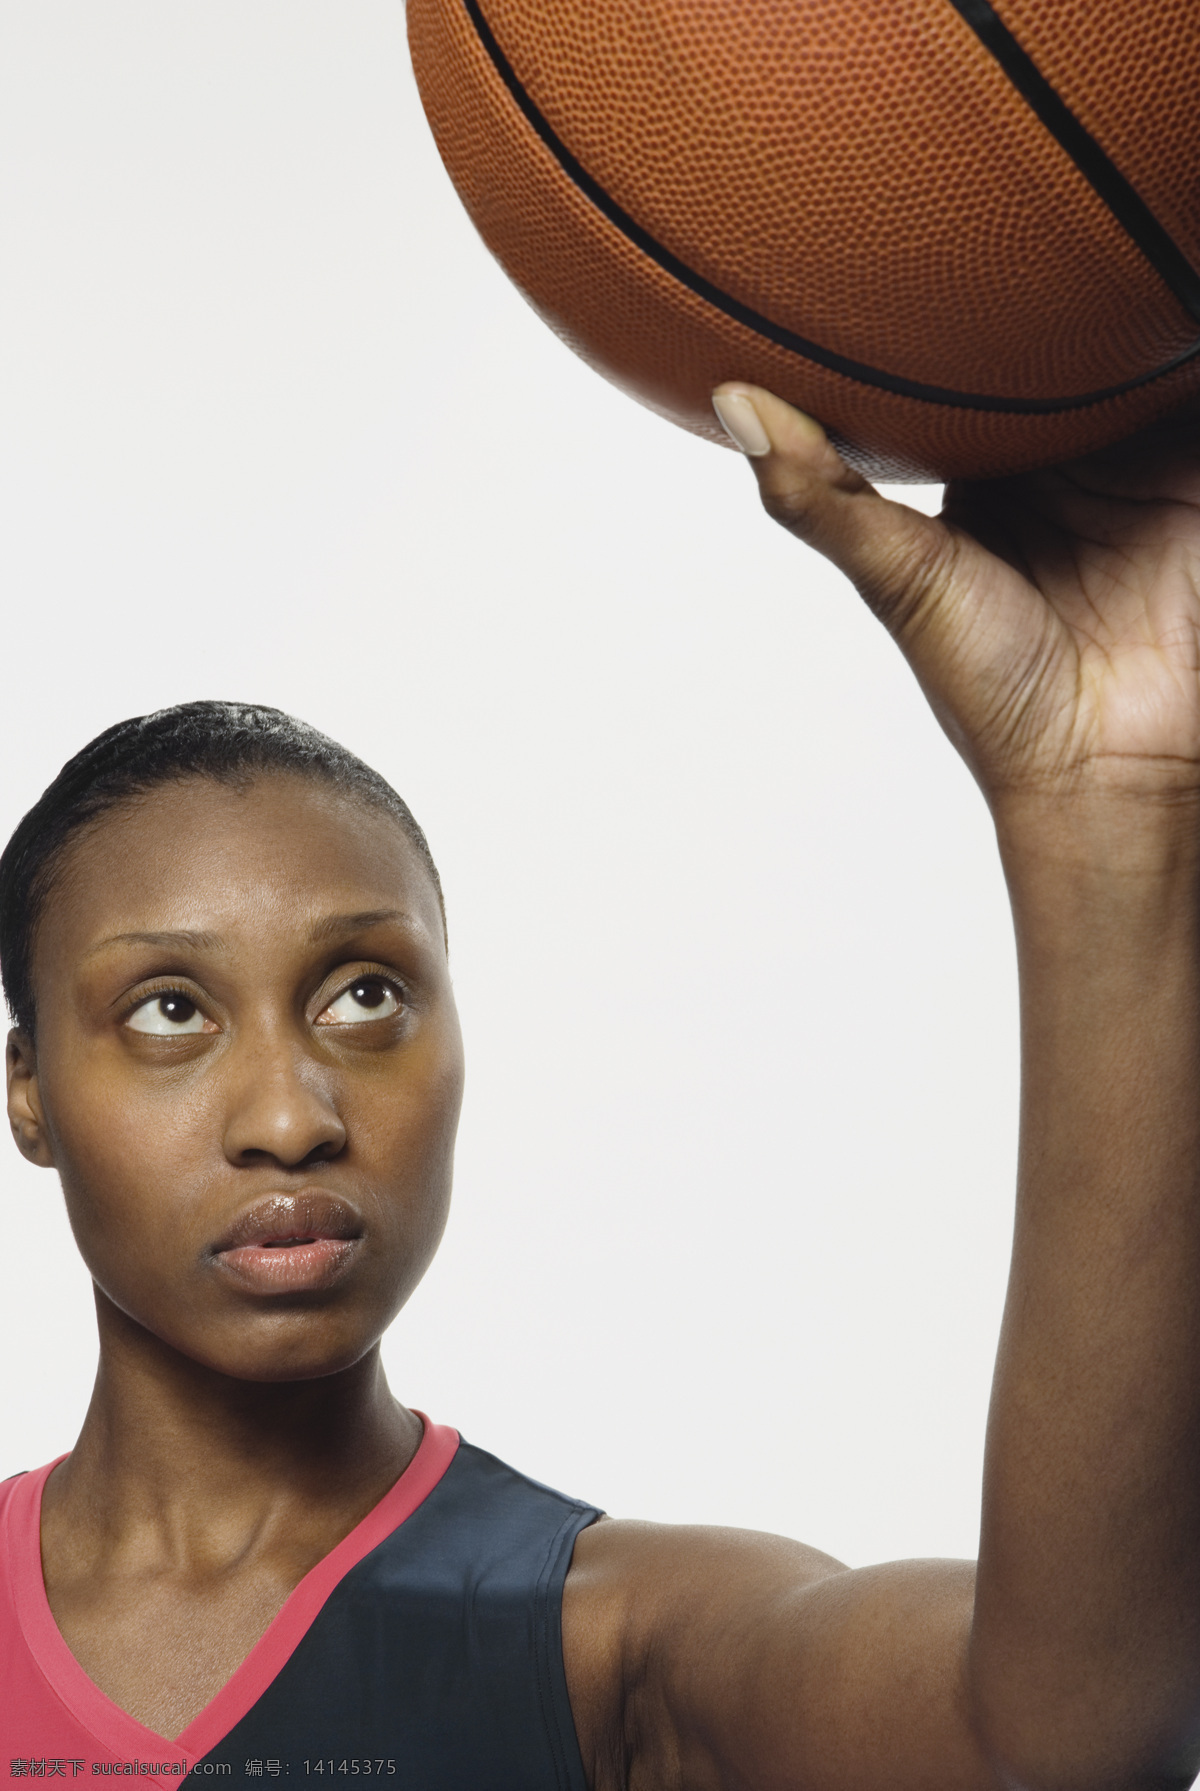 手 篮球 运动员 篮球运动员 篮球宝贝 运动 女人 女性 外国女性 职业女性 世界杯 国外女性 女运动员 职业人物 商务人士 人物图片